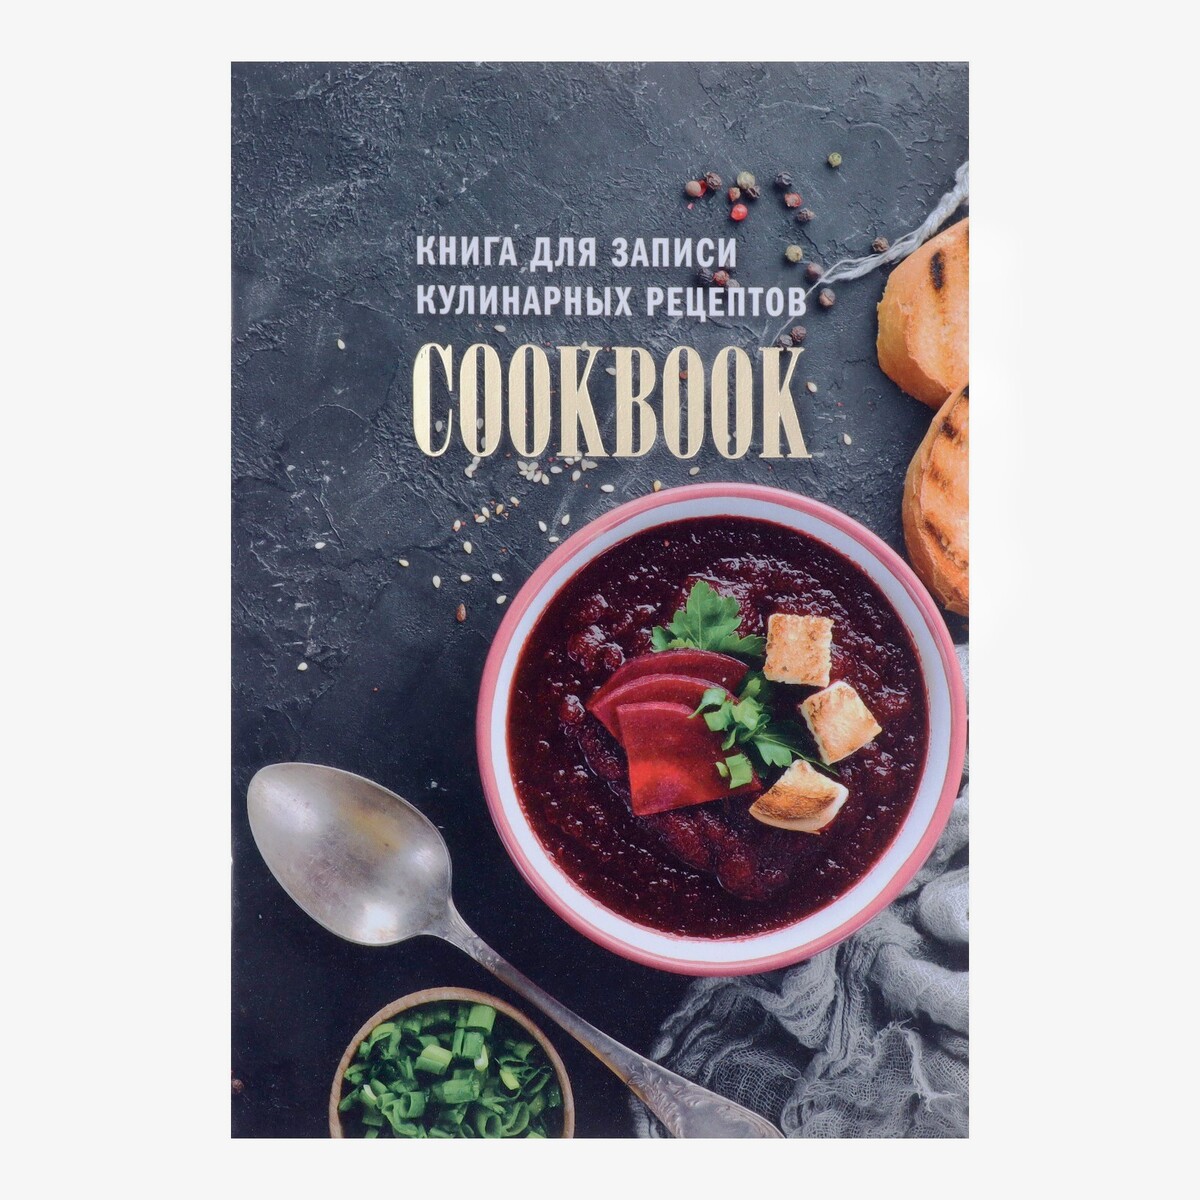 Книга для записи кулинарных рецептов а5, 48 листов щиборщи счастье есть дома книга быстрых жизненных рецептов для начинающих с автографом